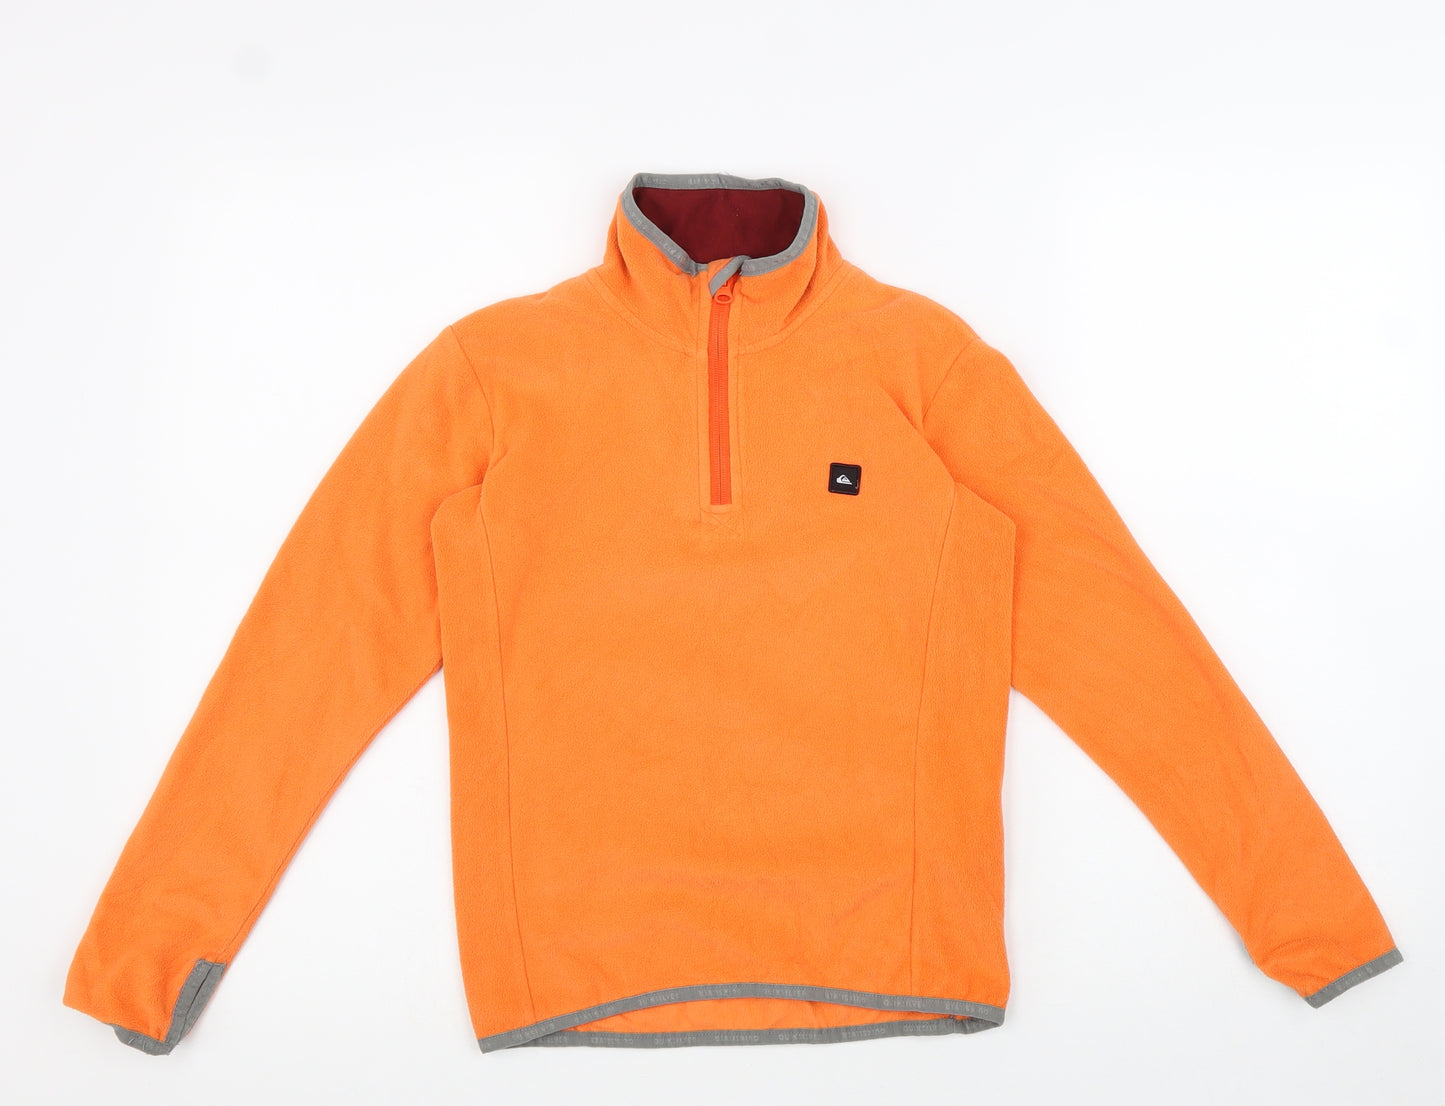 Quiksilver Boys Orange 100% Polyester Pullover Sweatshirt Size S Zip